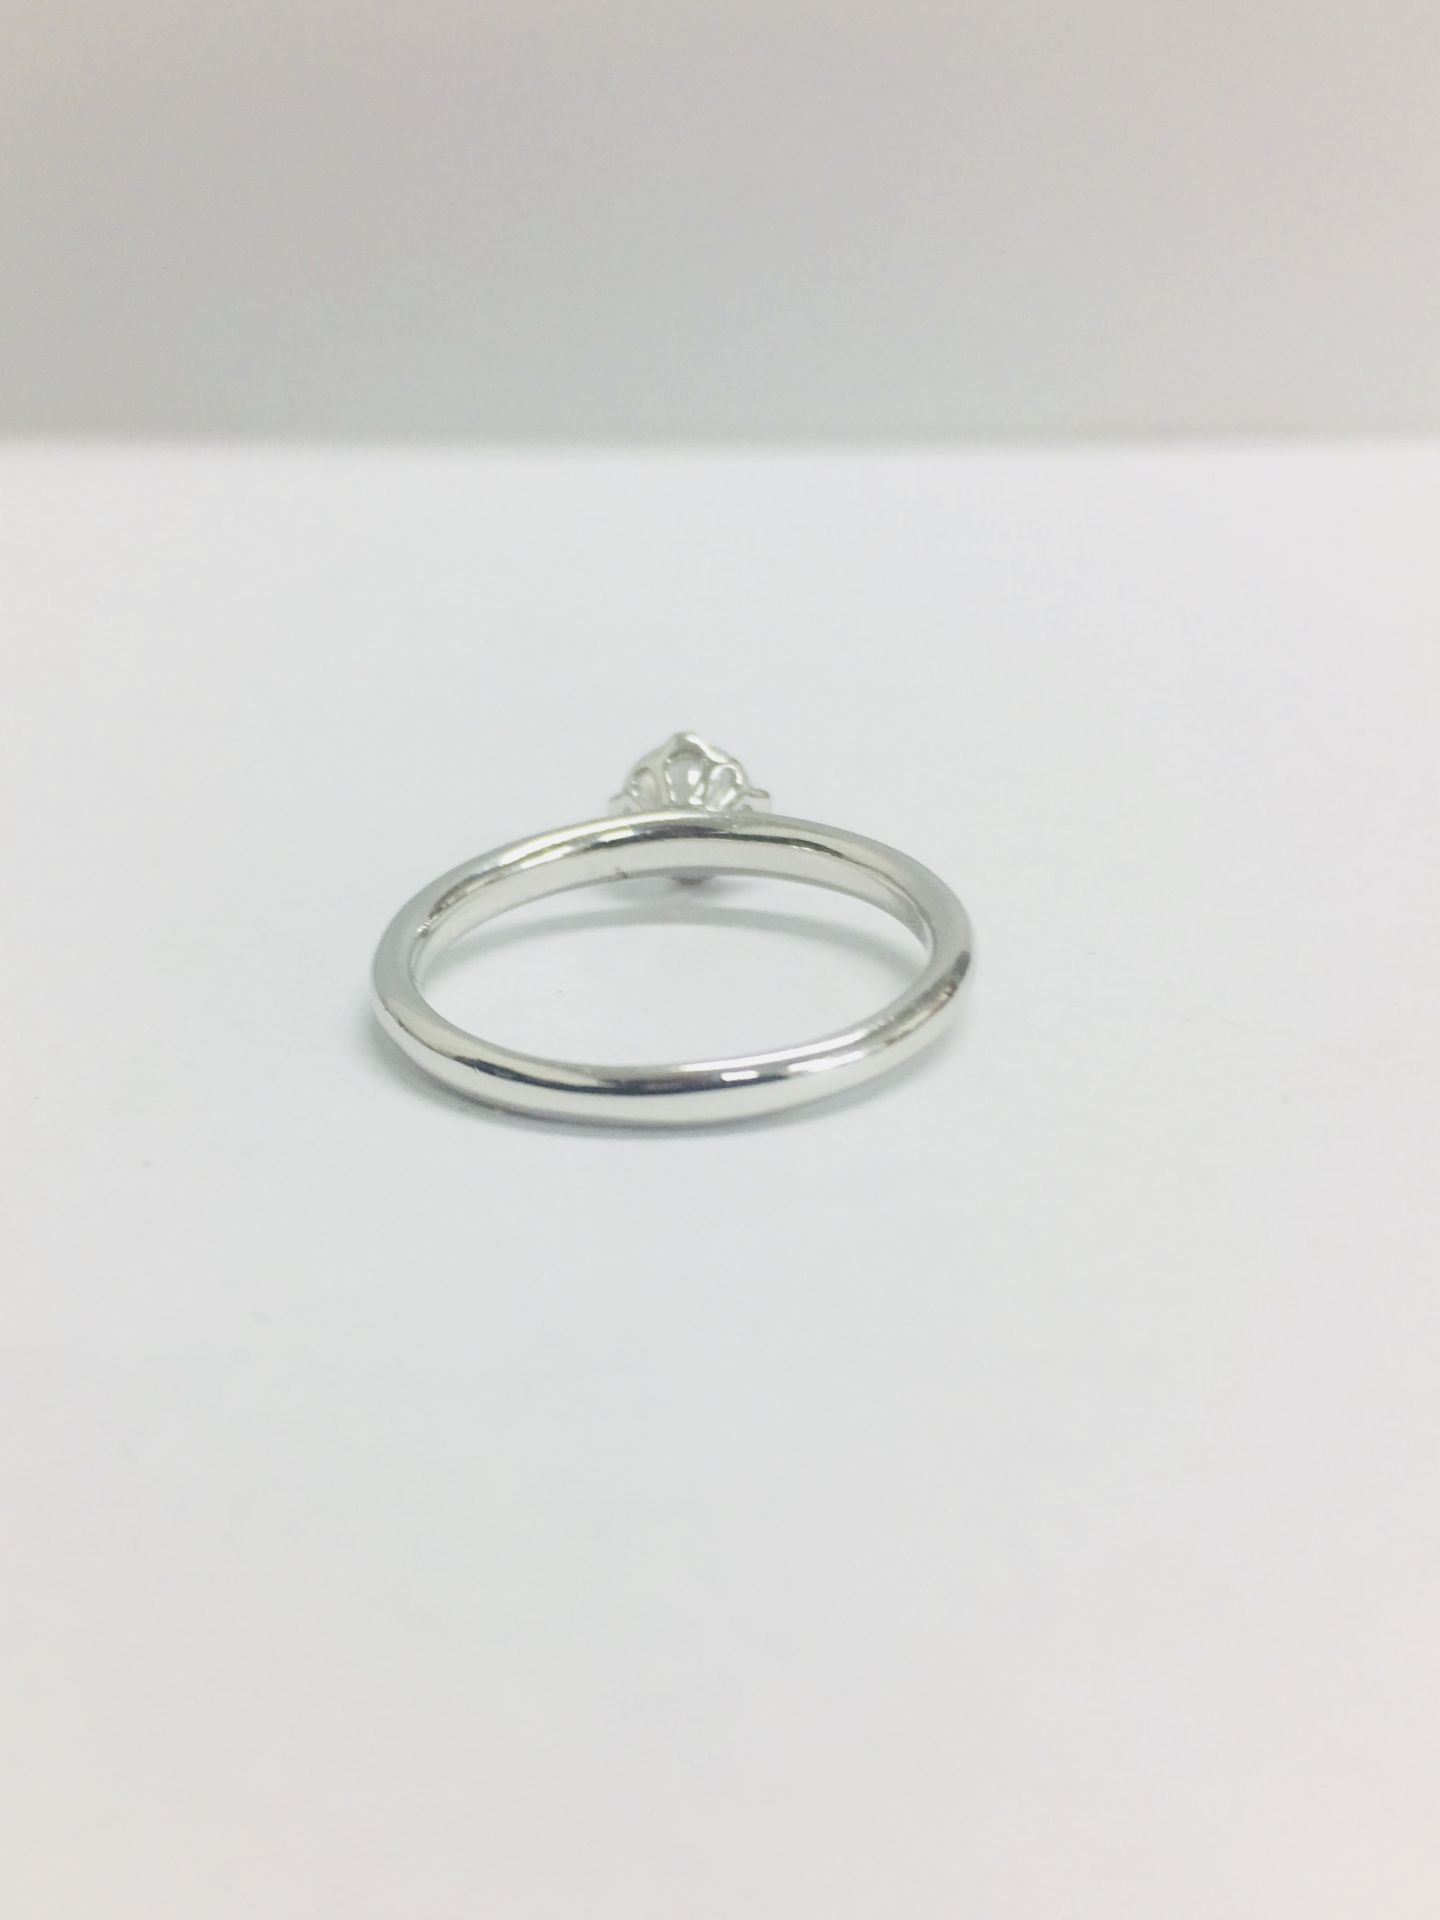 Platinum diamond solitaire ring,0.50ct brillliant cut diamond D colour vs clarity,2.9gms platinum , - Image 6 of 7